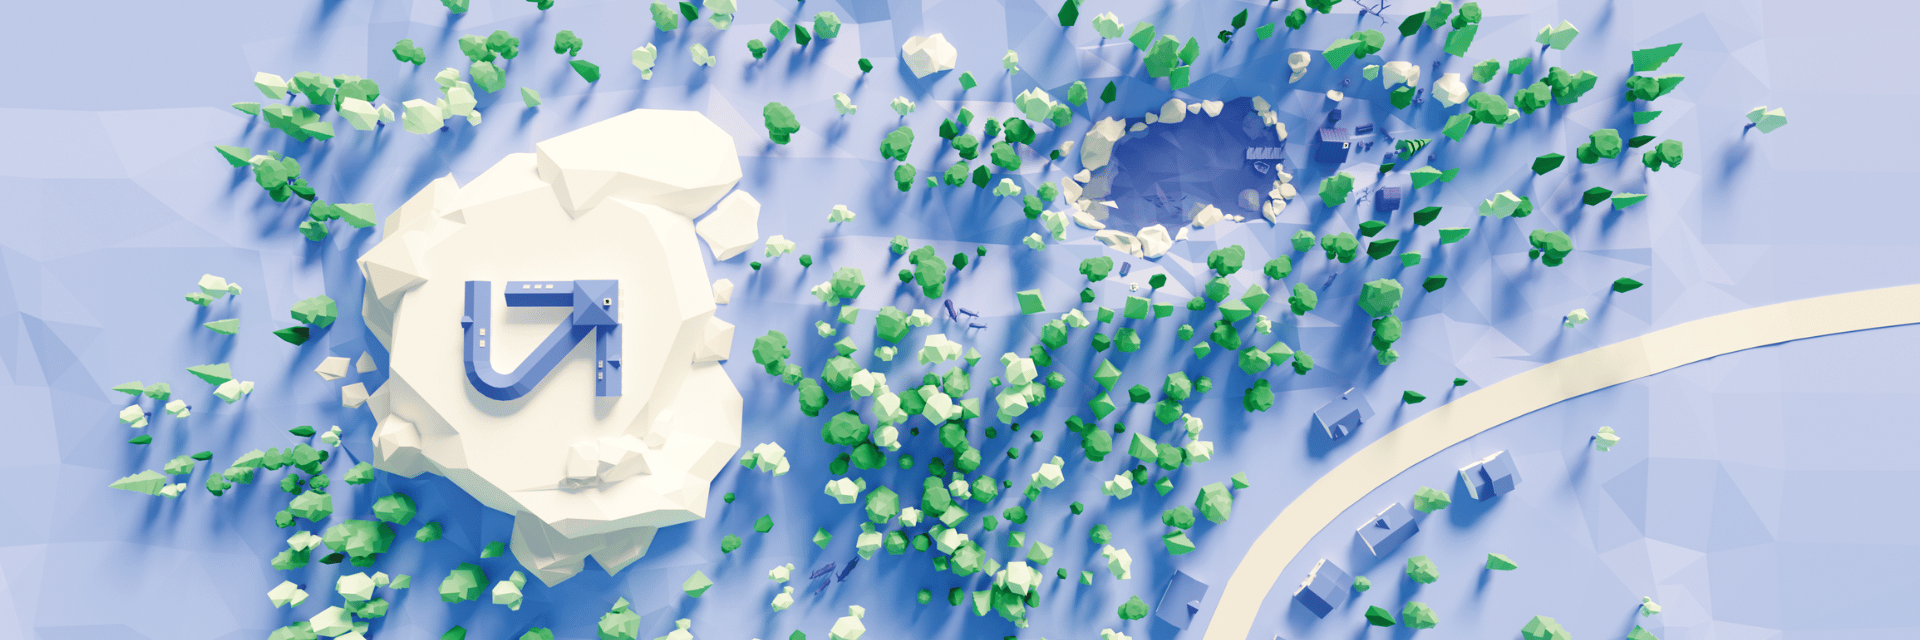 Eine animierte winterliche Landschaft von oben in den Ubilabs-Farben blau und grün, zusammen mit der Bildmarke von Ubilabs